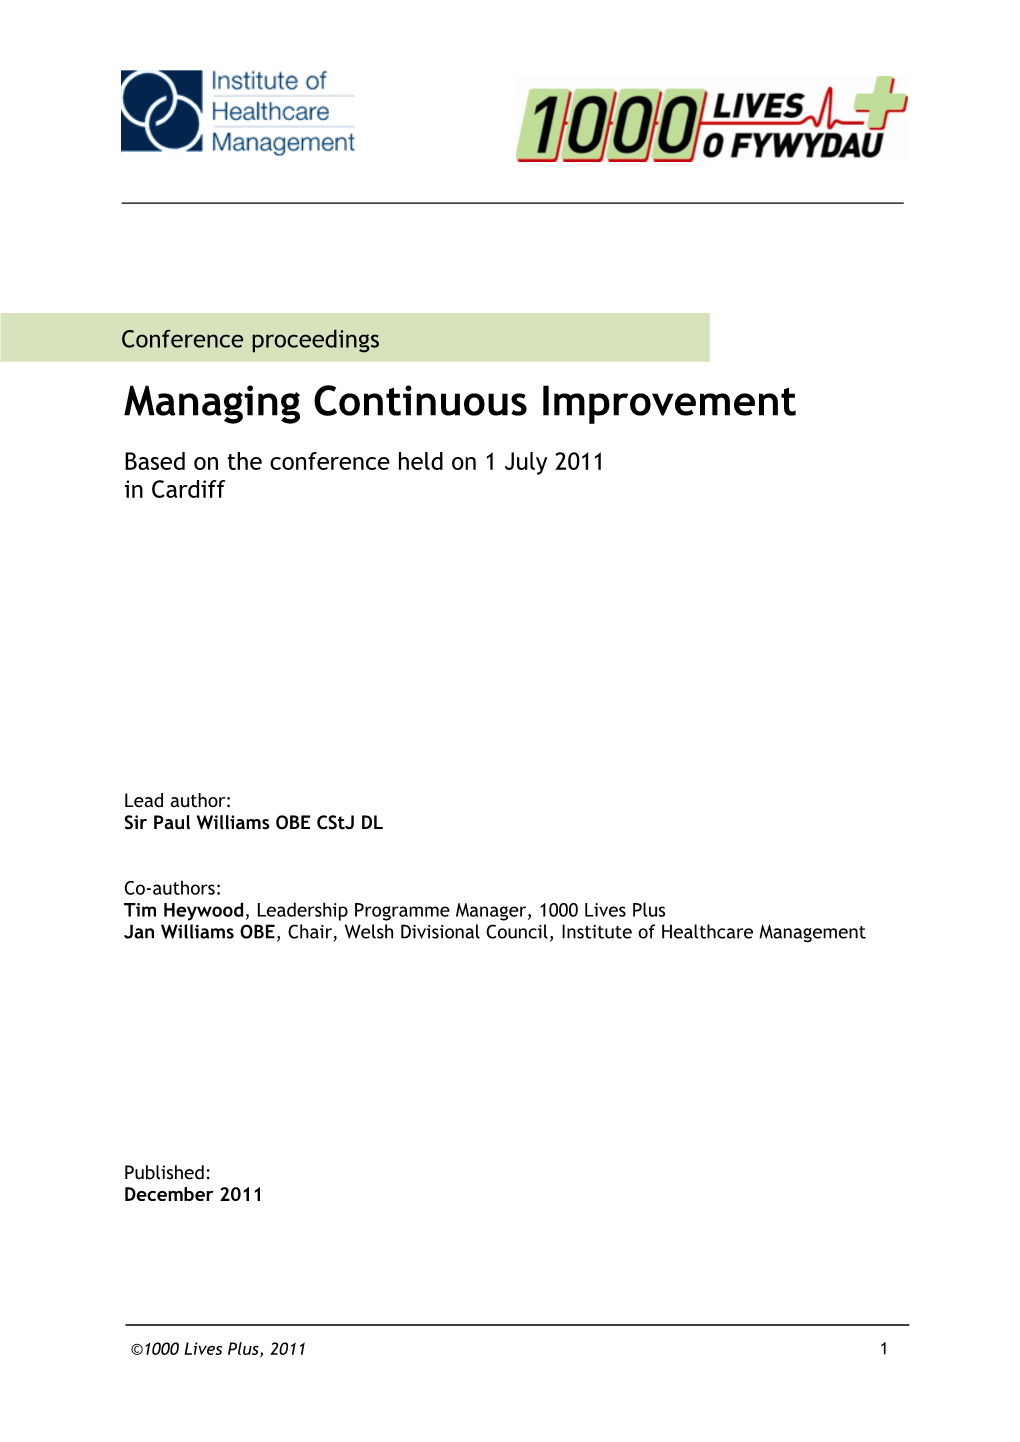 Managing Continuous Improvement